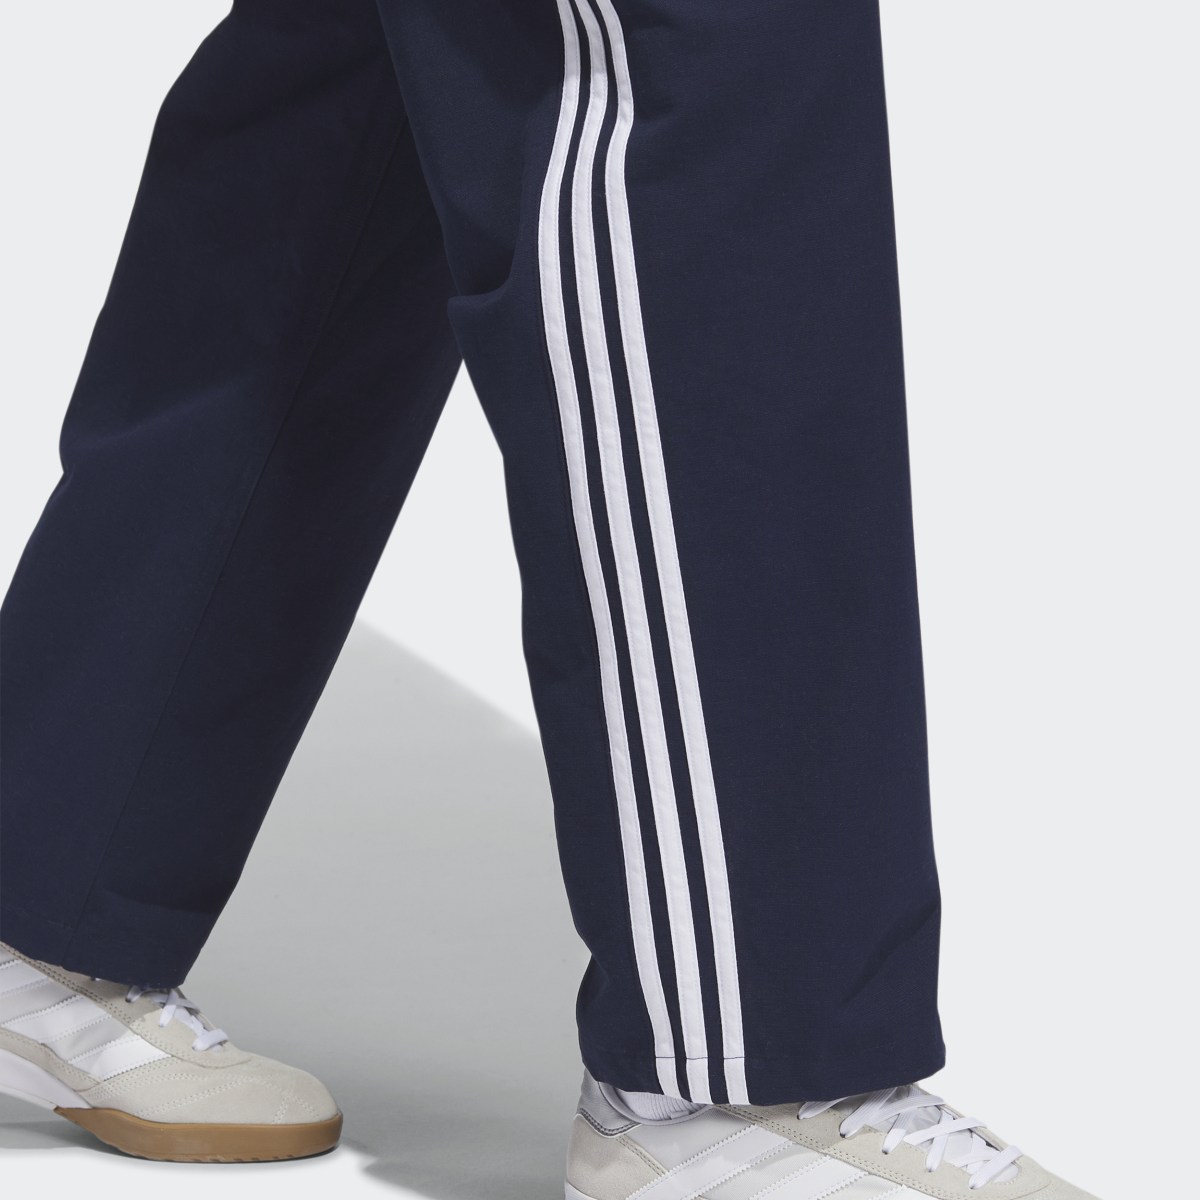 Adidas 3-Stripes Skate Chino Pants. 8